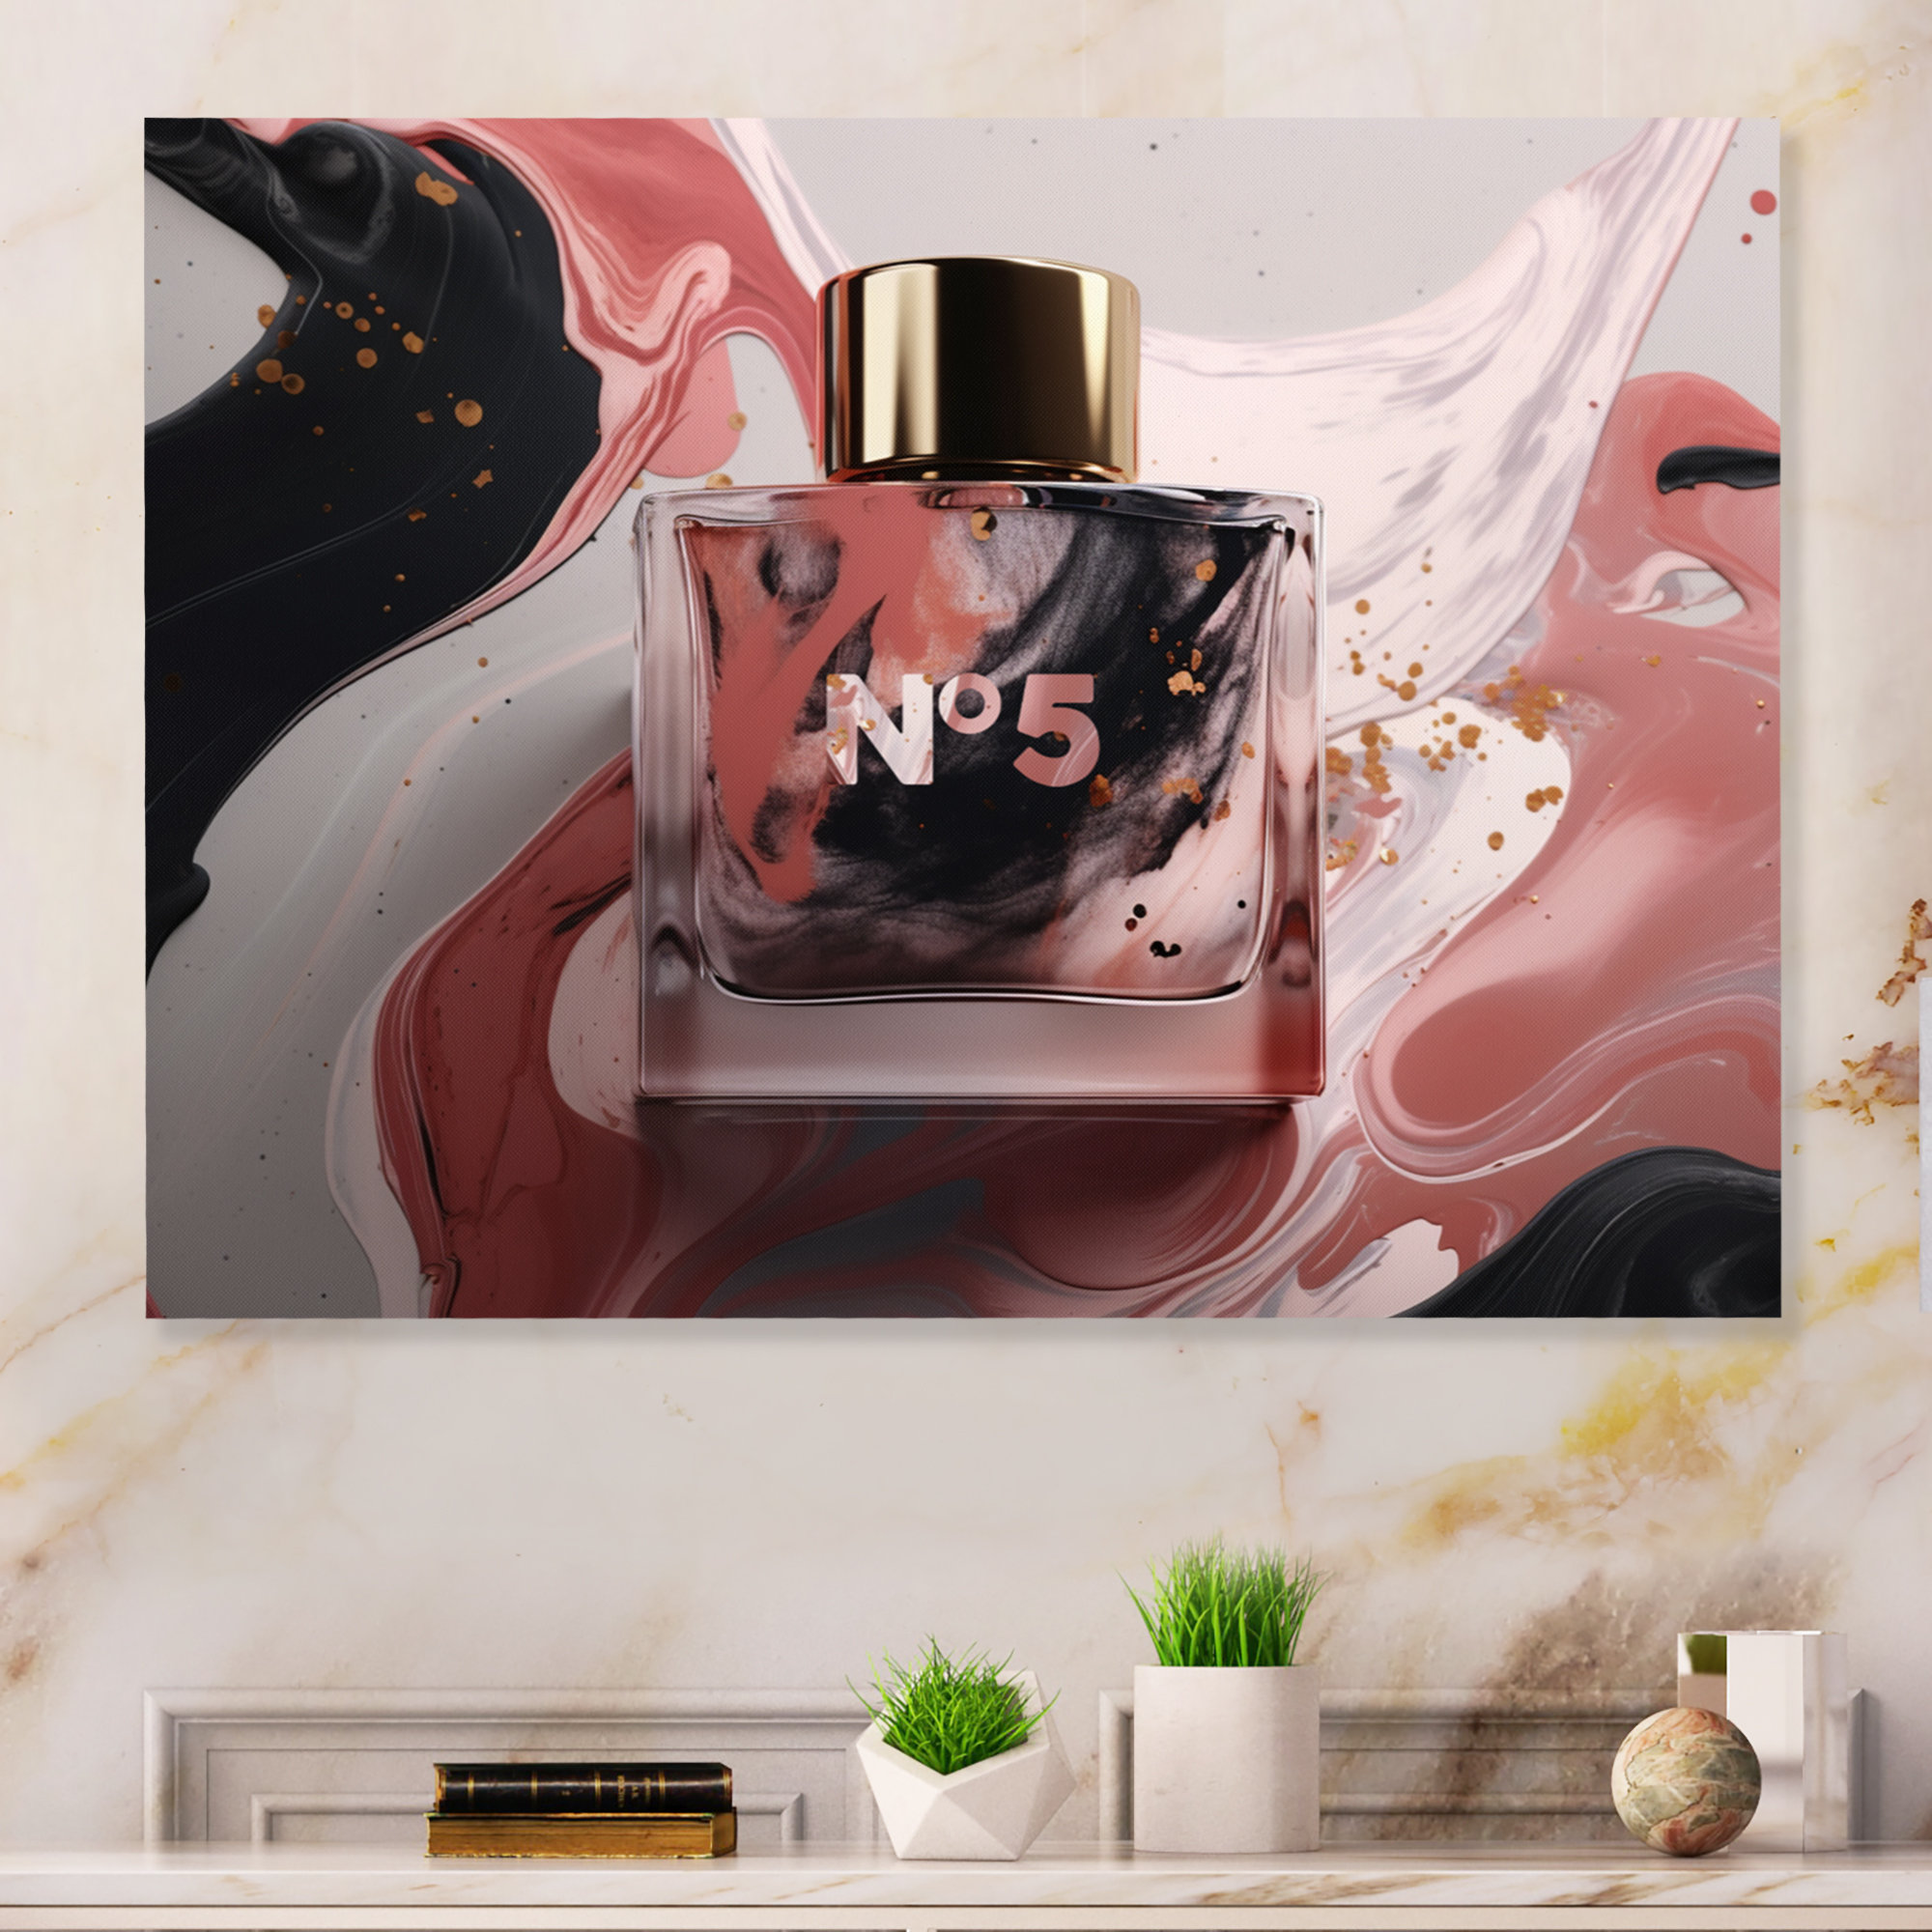 Designart 'Perfume Chanel Five With Butterflies' Modern Framed Canvas Wall  Art Print